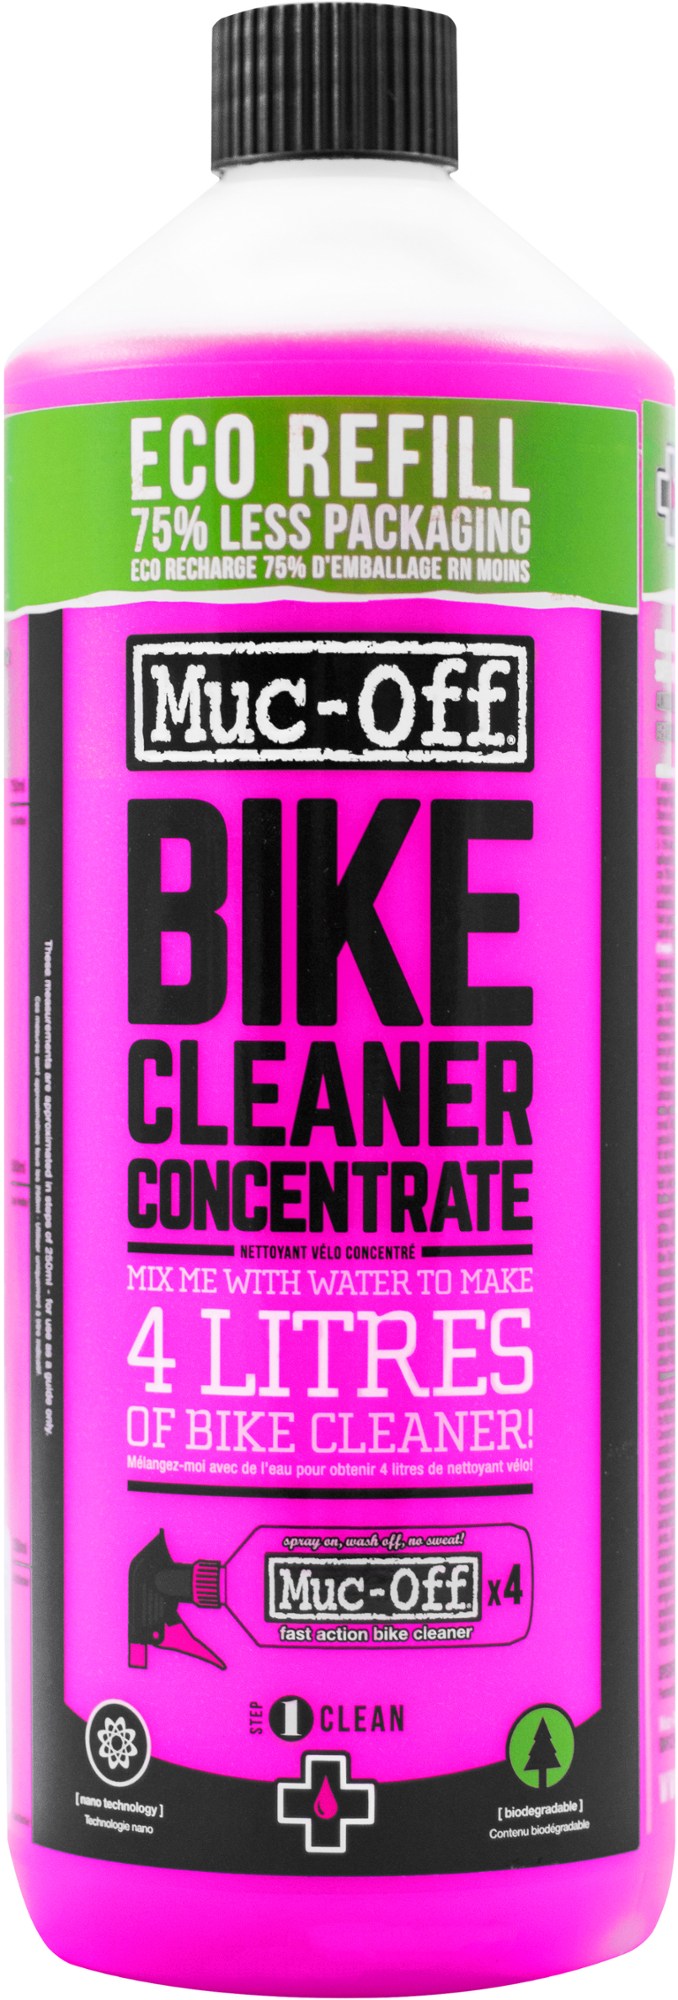 Концентрат для чистки велосипедов Muc-Off